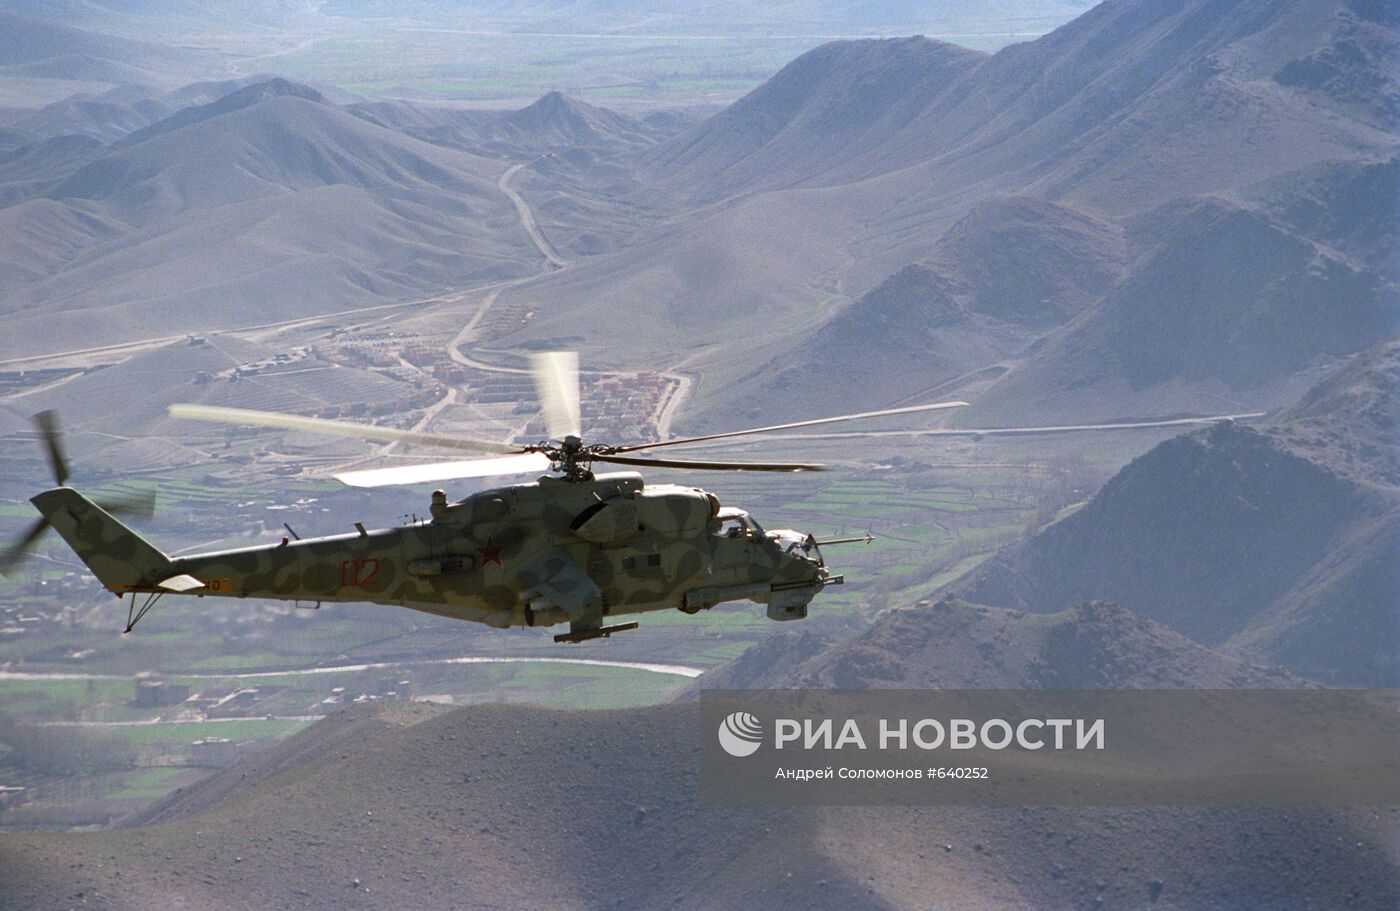 Вертолет "Ми-24" направляется на боевое задание